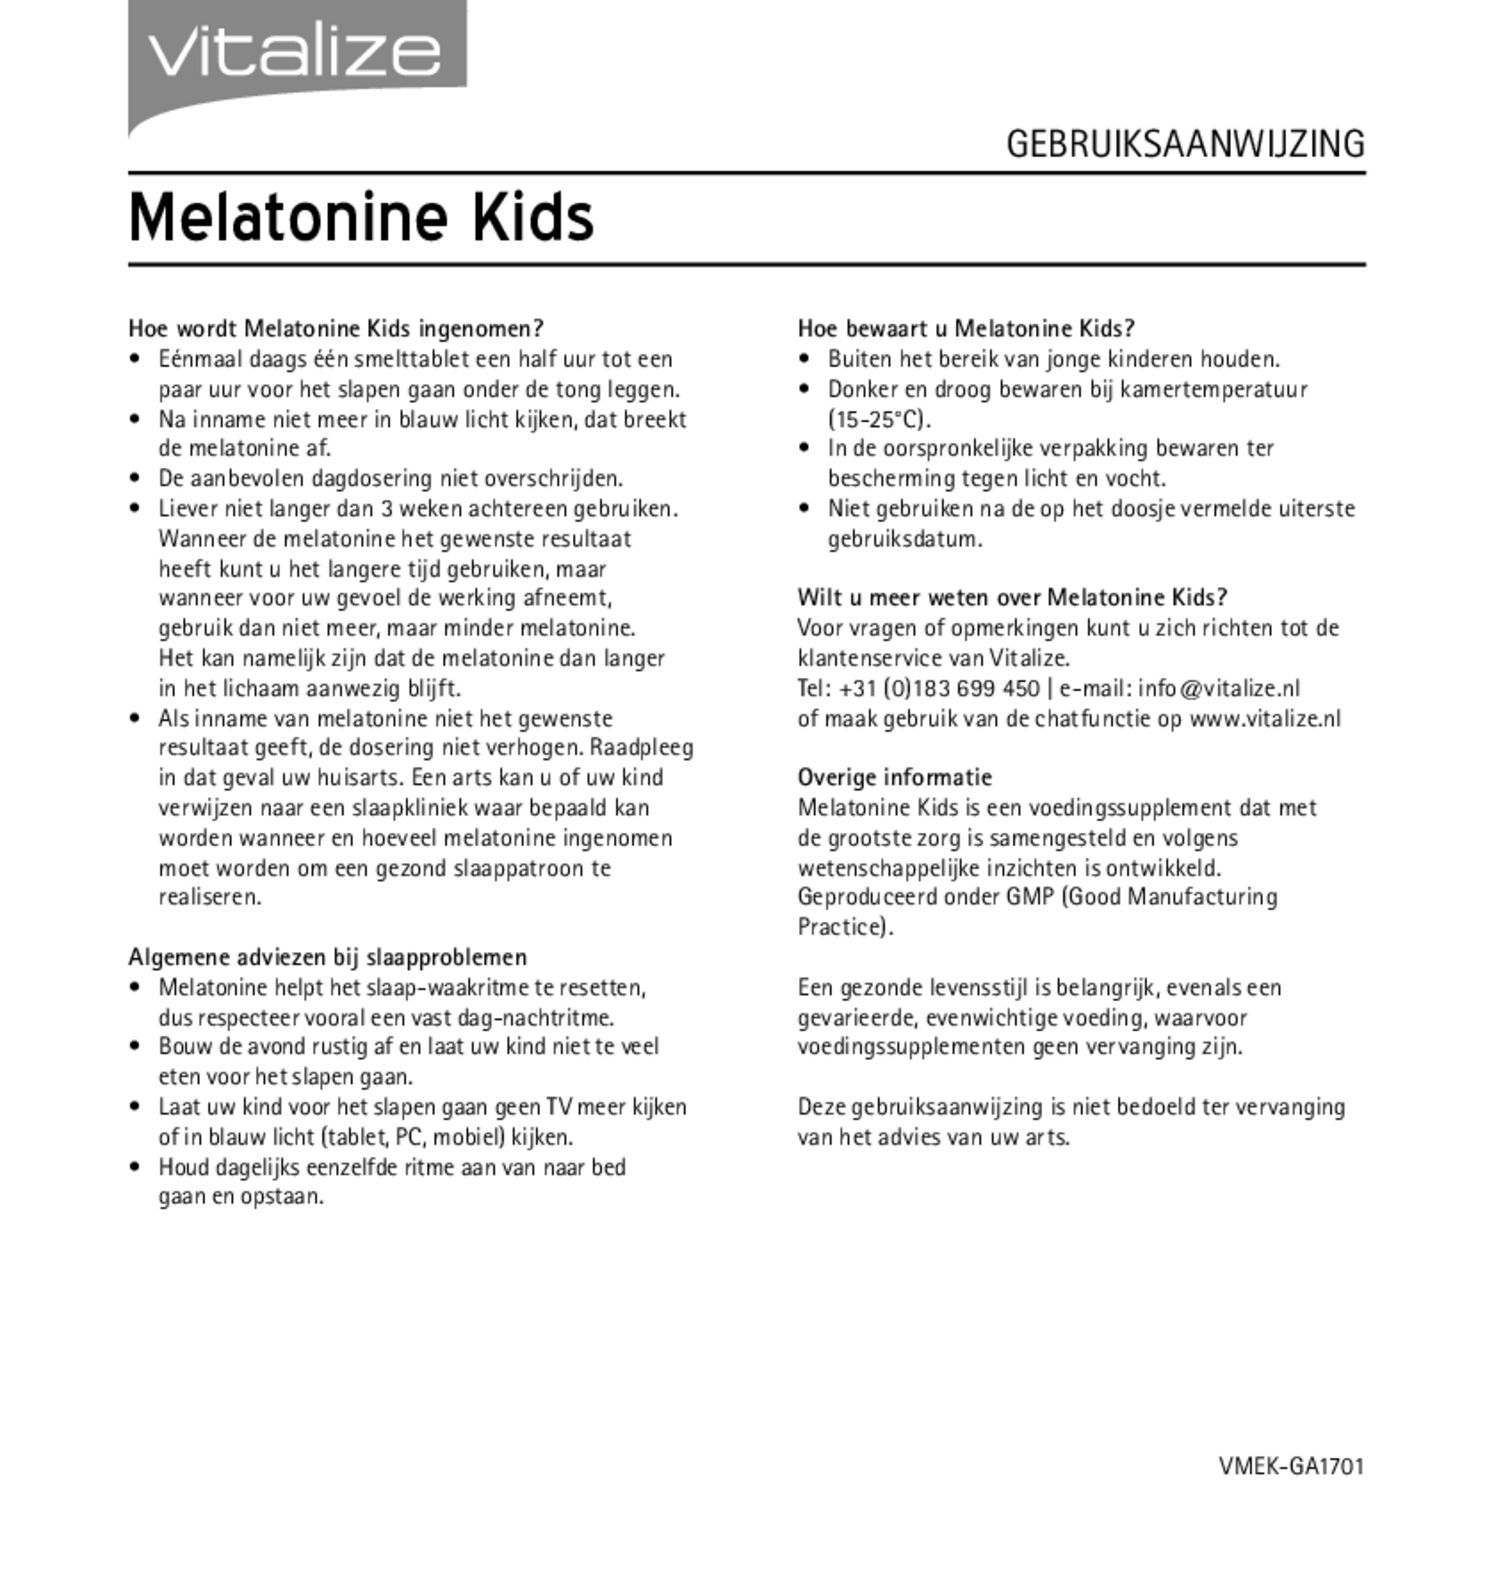 Melatonine Kids 0,299mg Tabletten afbeelding van document #2, gebruiksaanwijzing